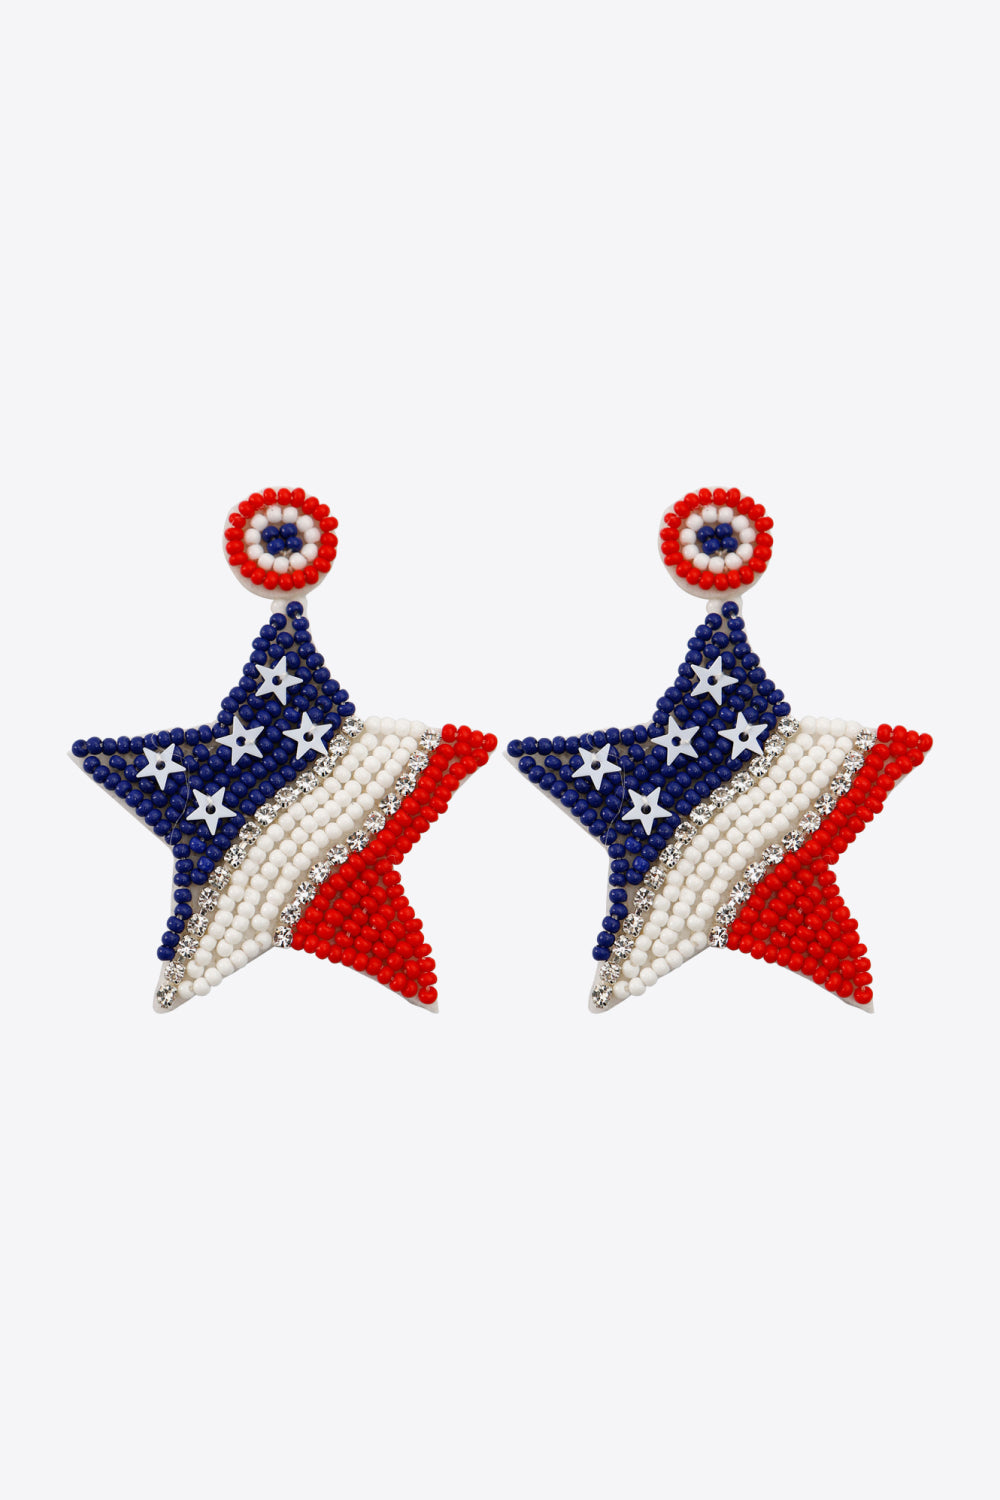 US Flag Beaded Star Earrings - FunkyPeacockStore (Store description)